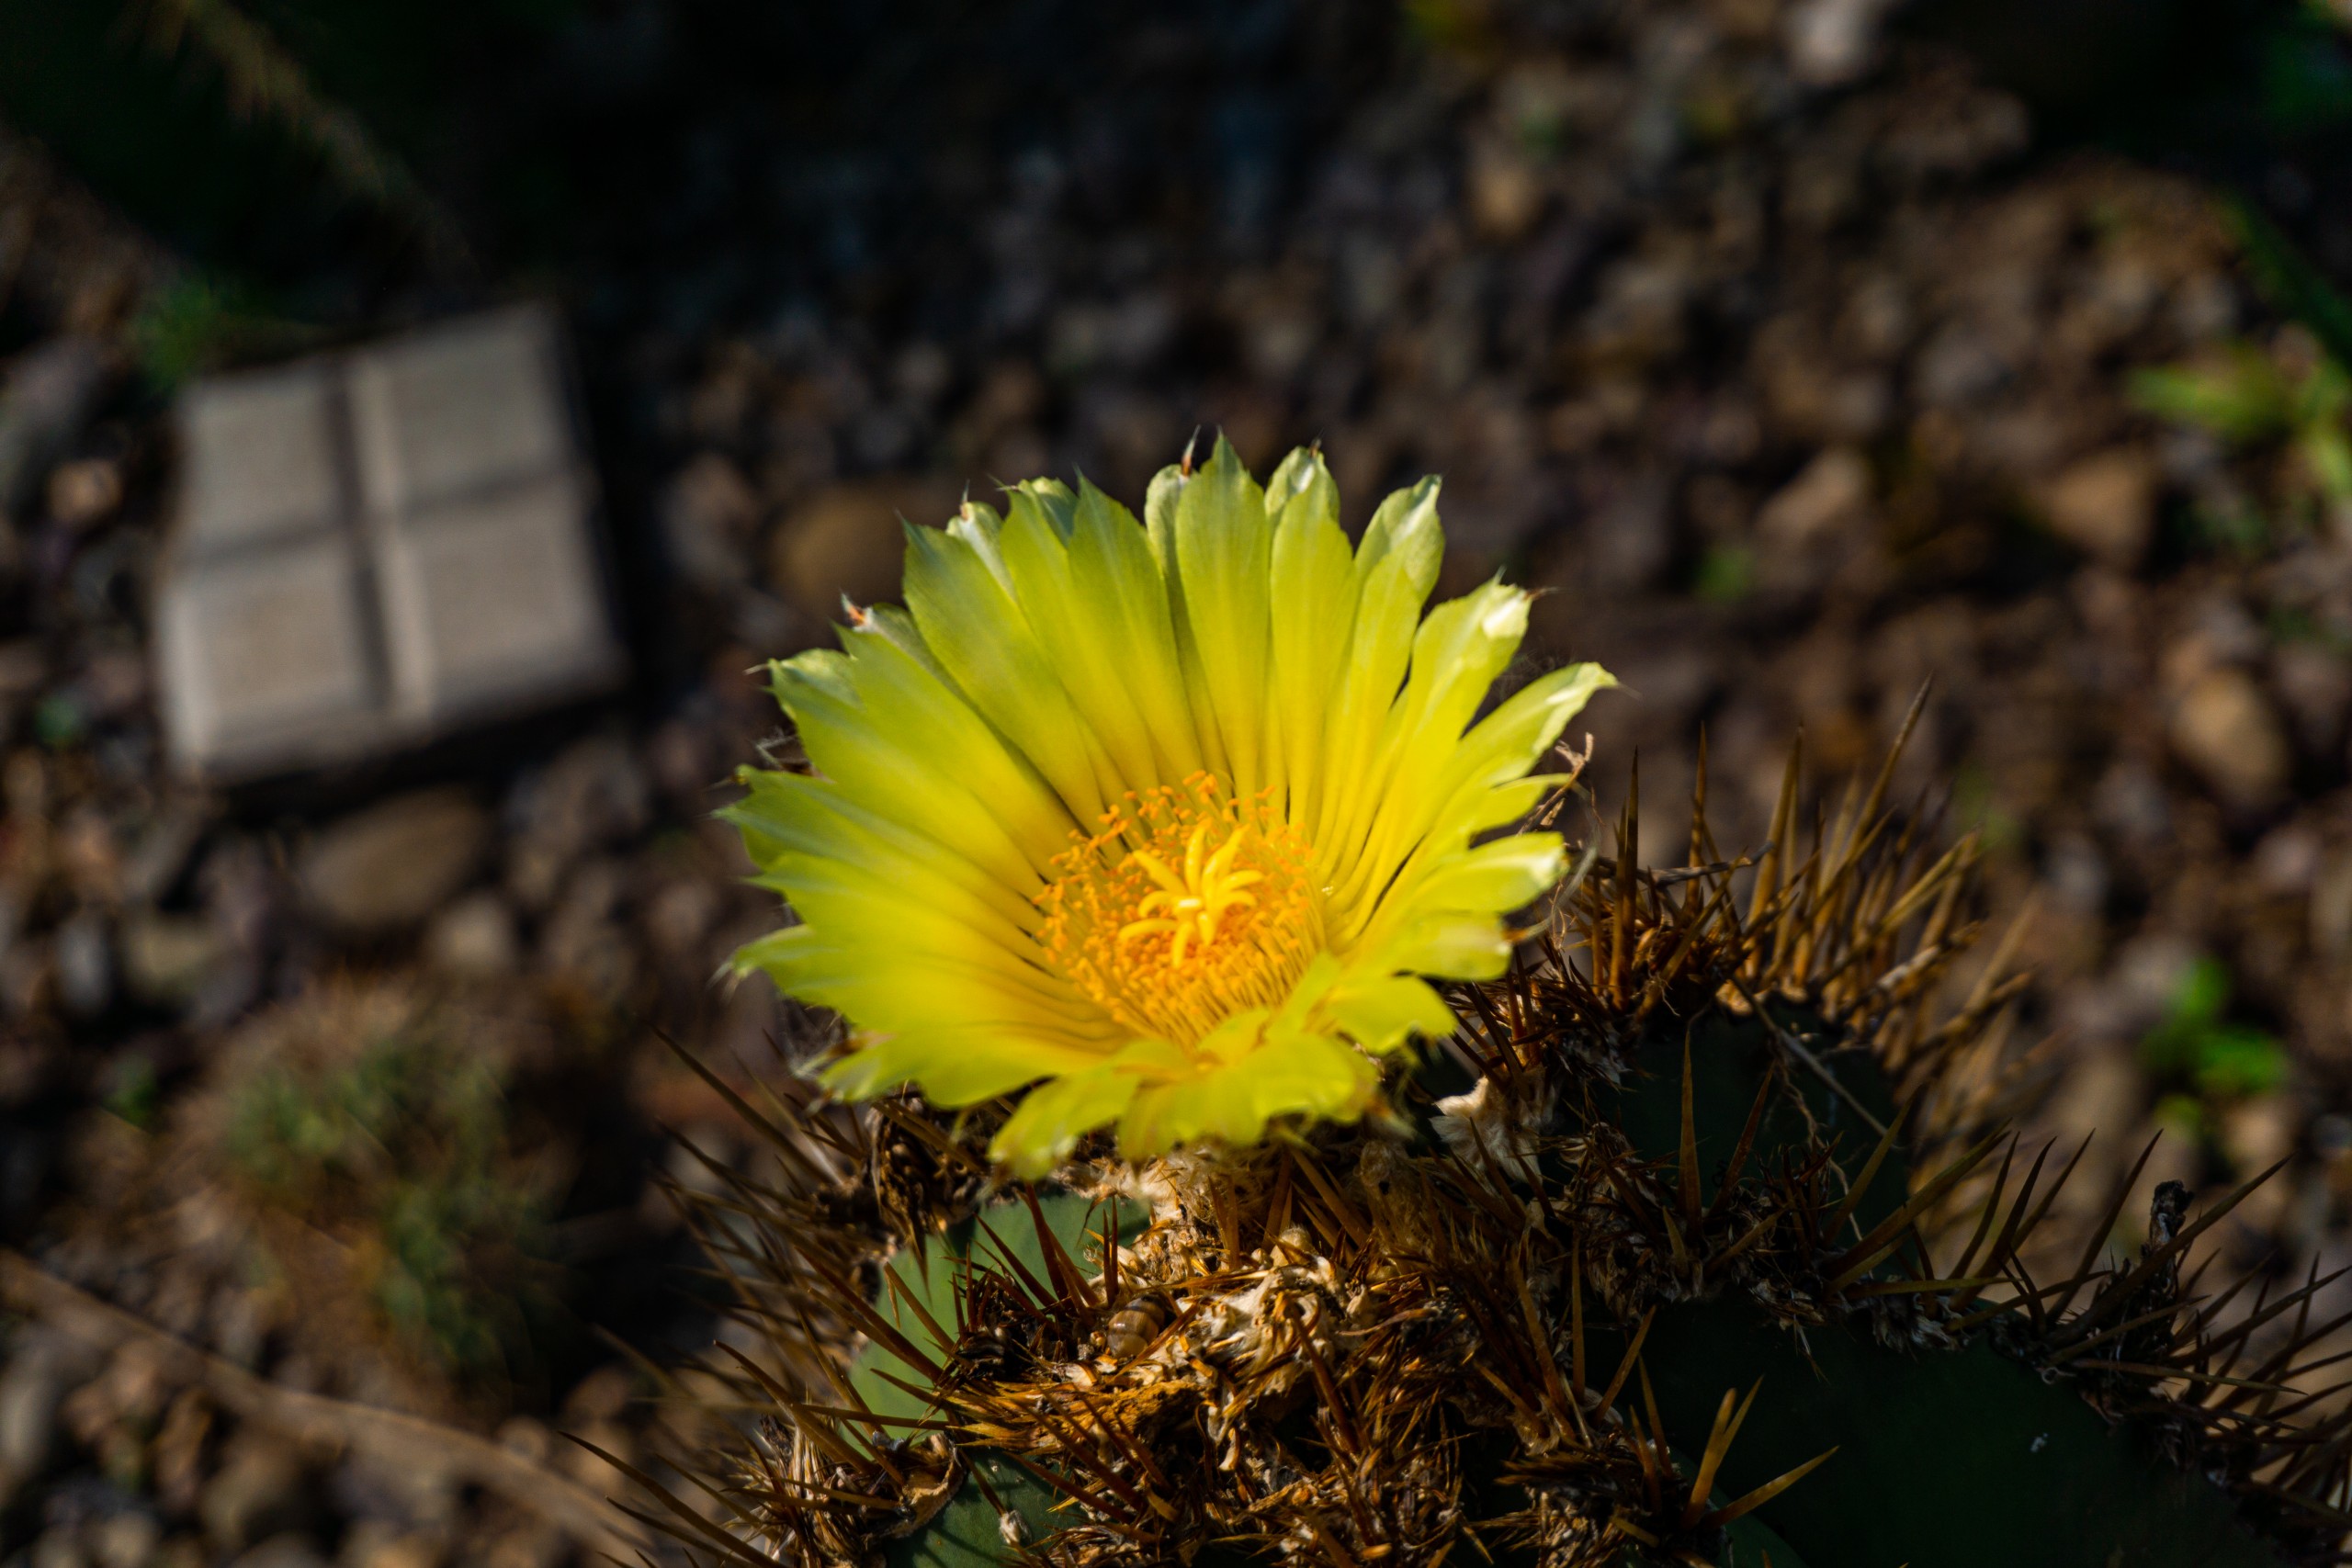 Parodia – Flower of a cactus plant